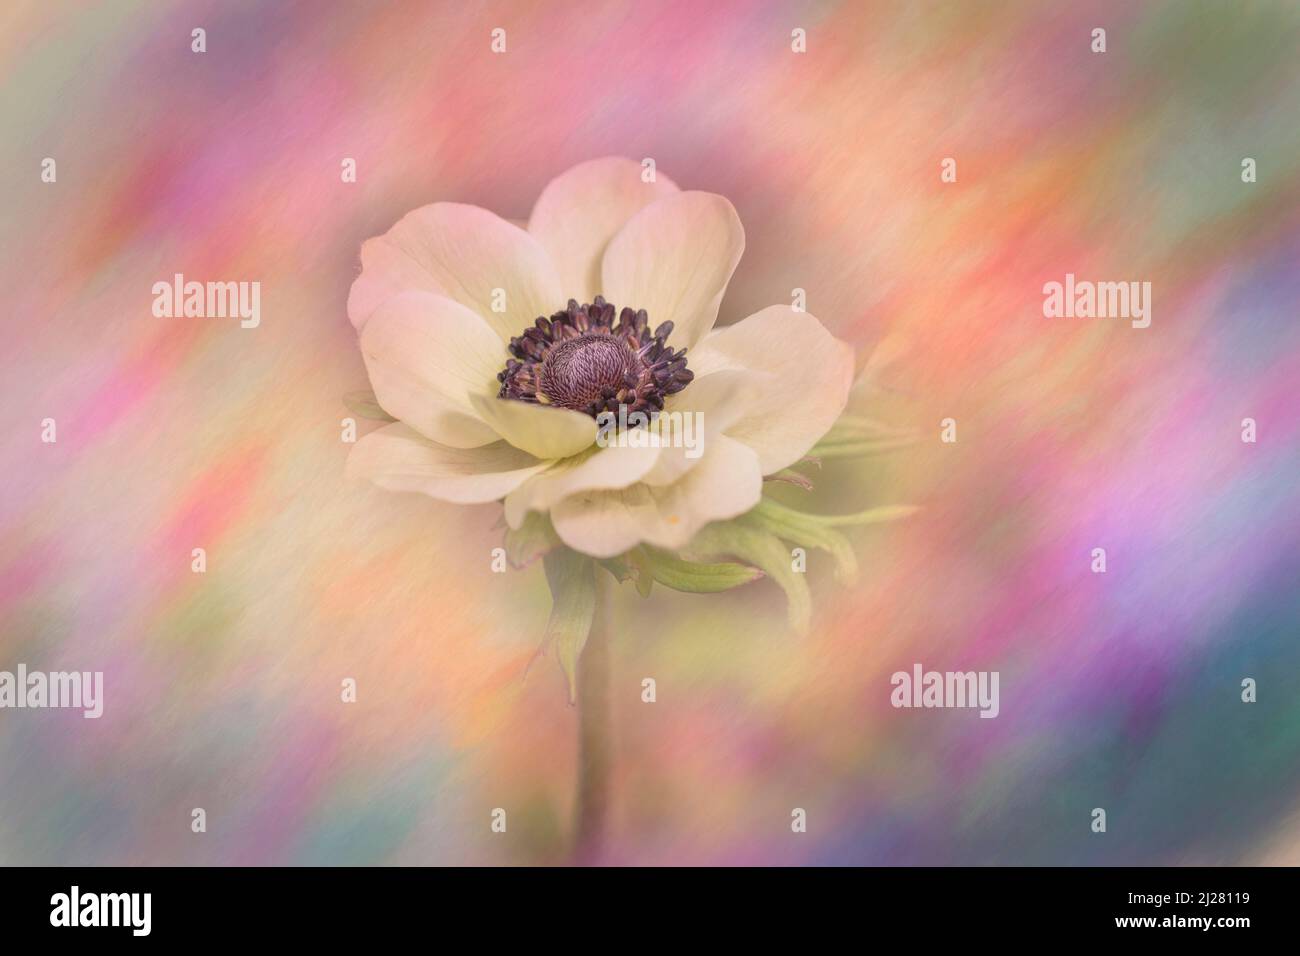 Amapola anémona blanca con centro púrpura sobre fondo texturizado Foto de stock